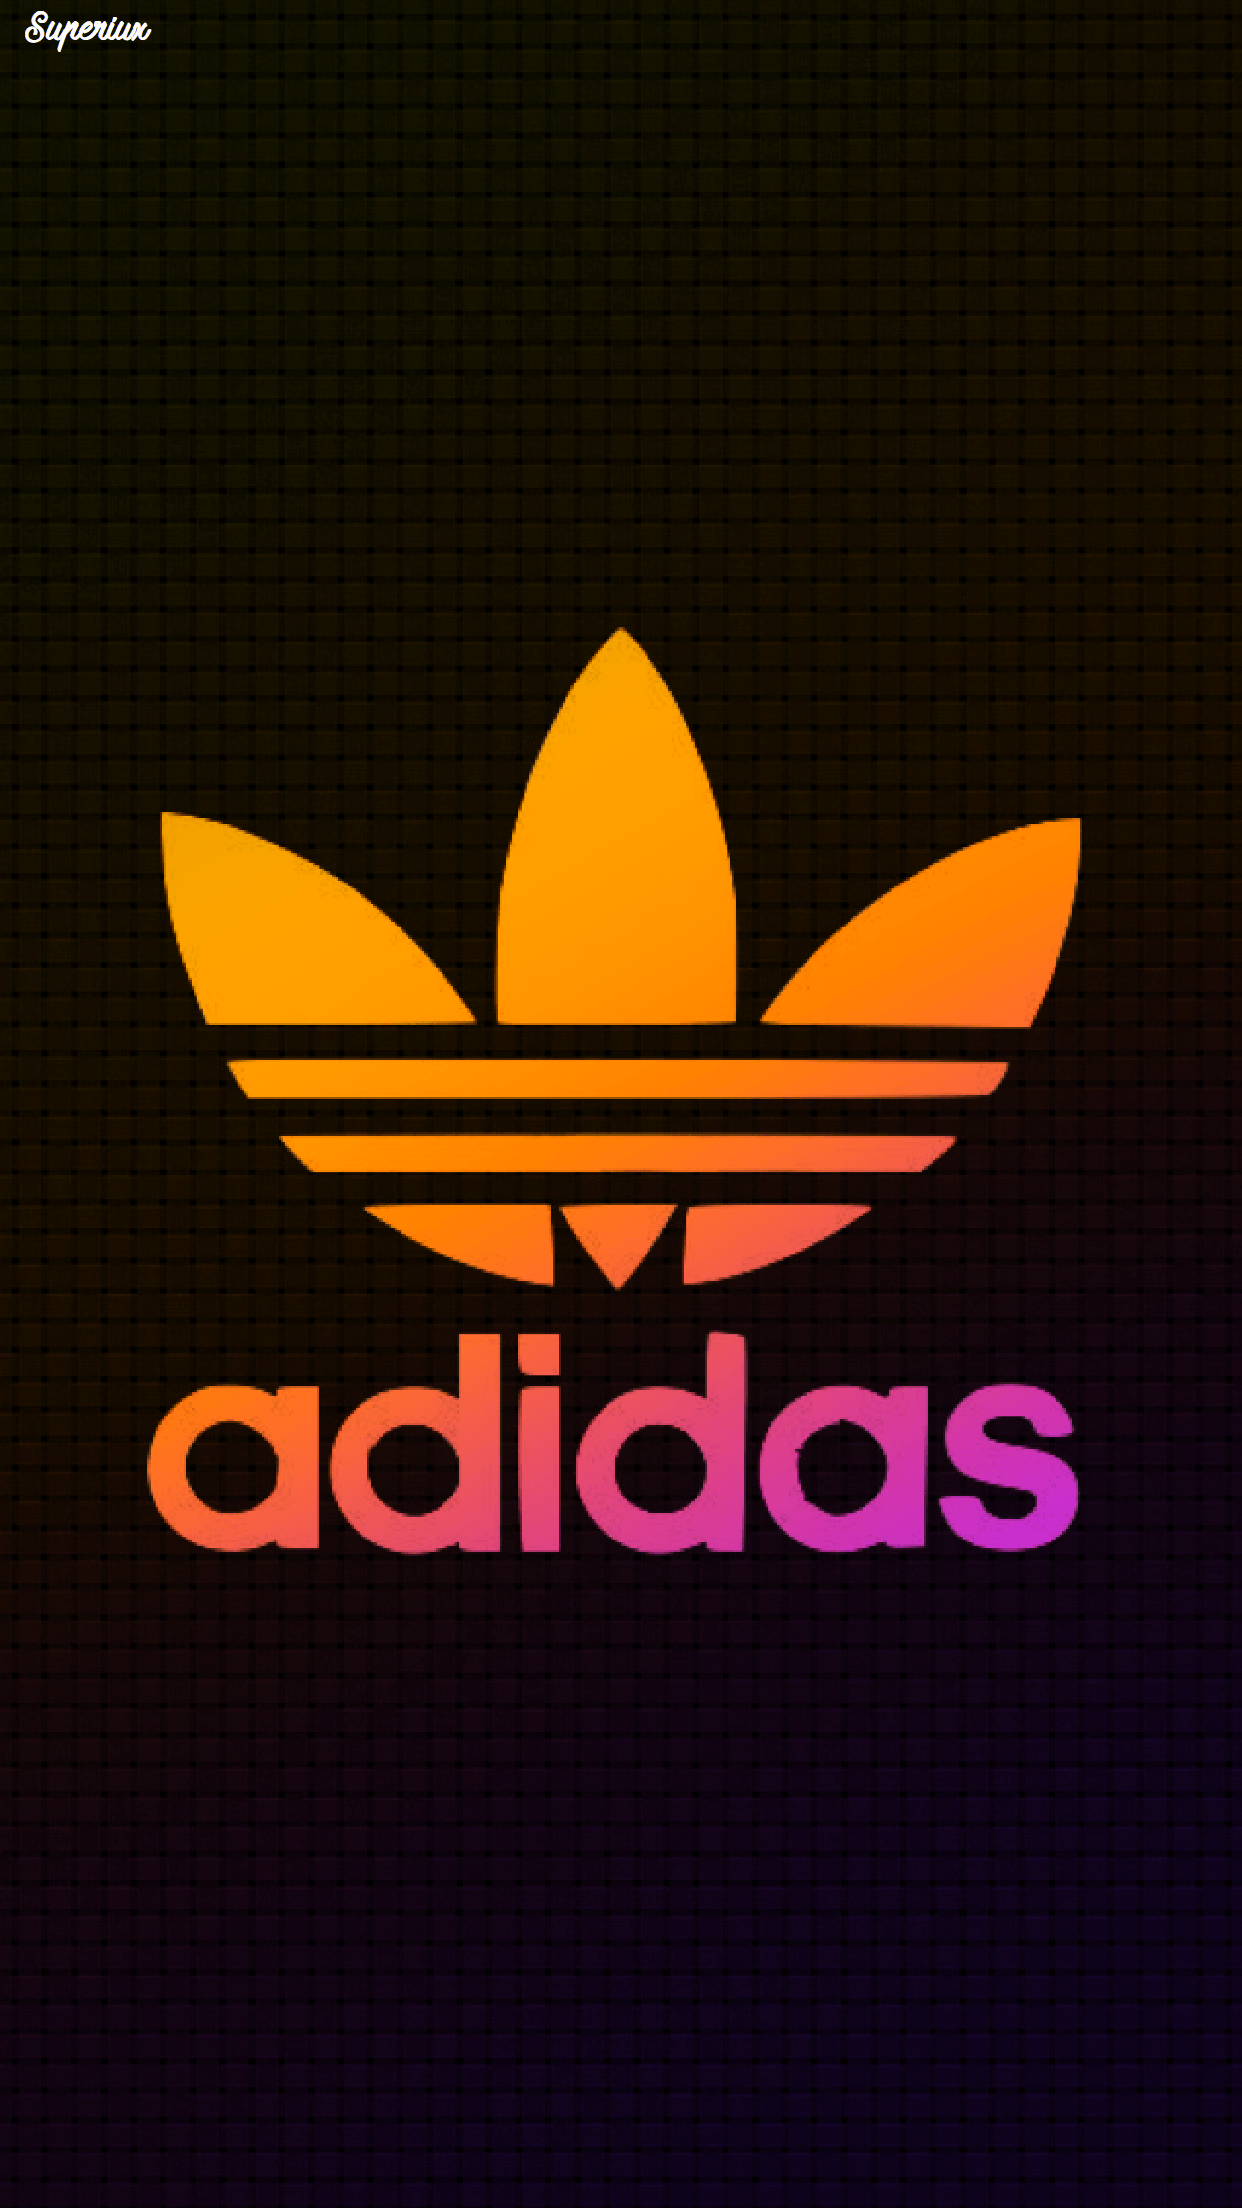 Adidas Wallpaper Logo. Adidas wallpaper, Adidas logo